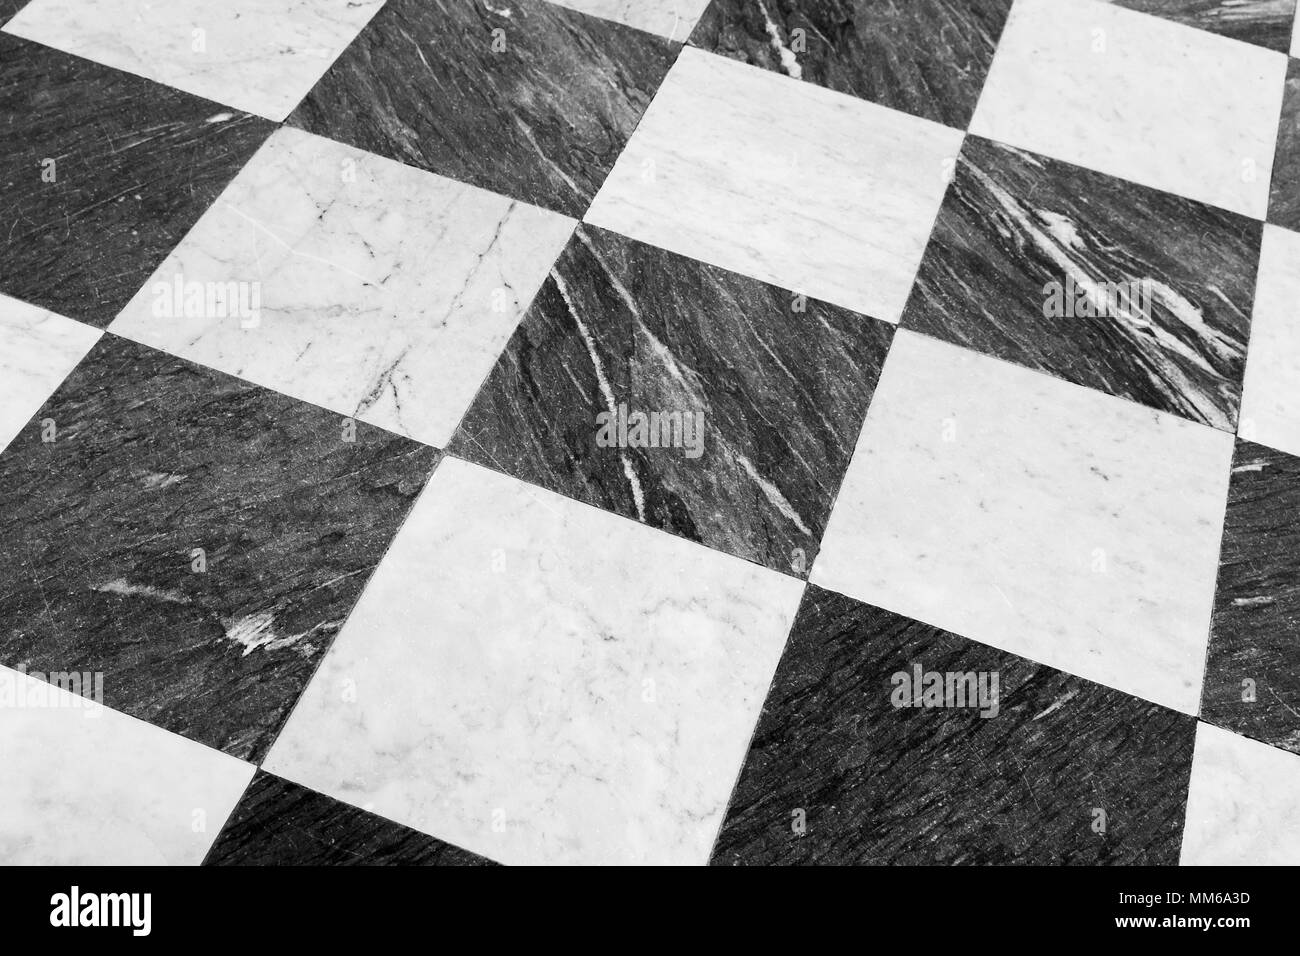 Marmorboden Tiling mit klassischen schwarz-weiß karierte Muster Stockfoto